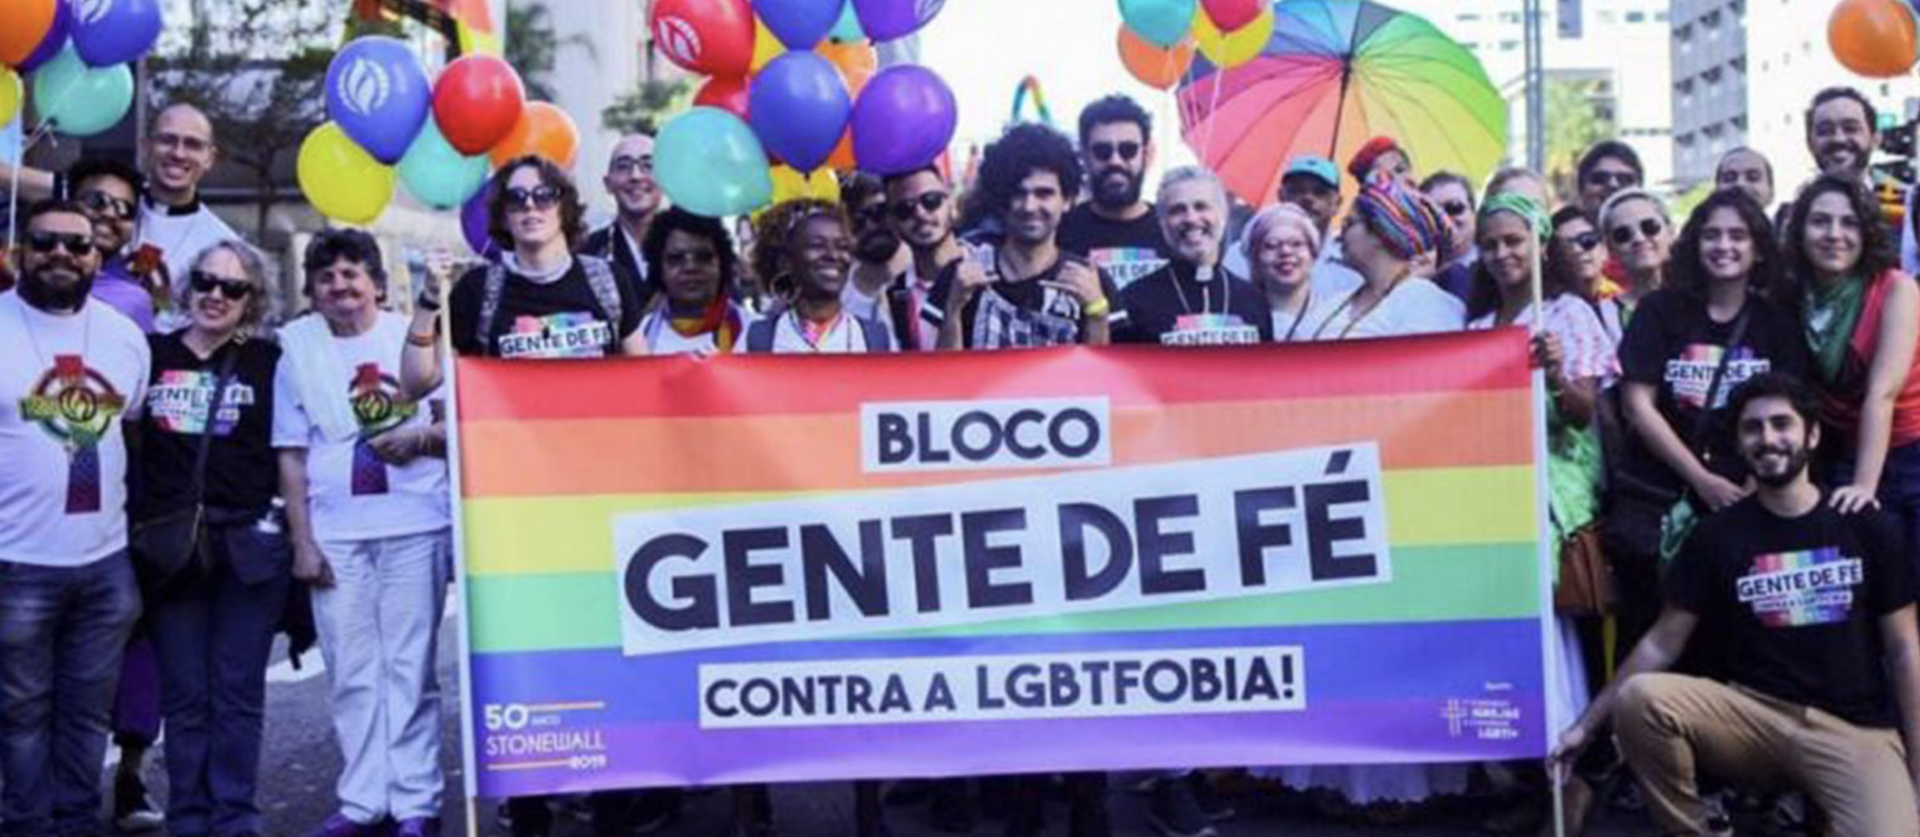 Les personnes LGBT au Brésil sont de mieux en mieux intégrées dans l'Eglise catholique | © redecatolicoslgbt.com.br